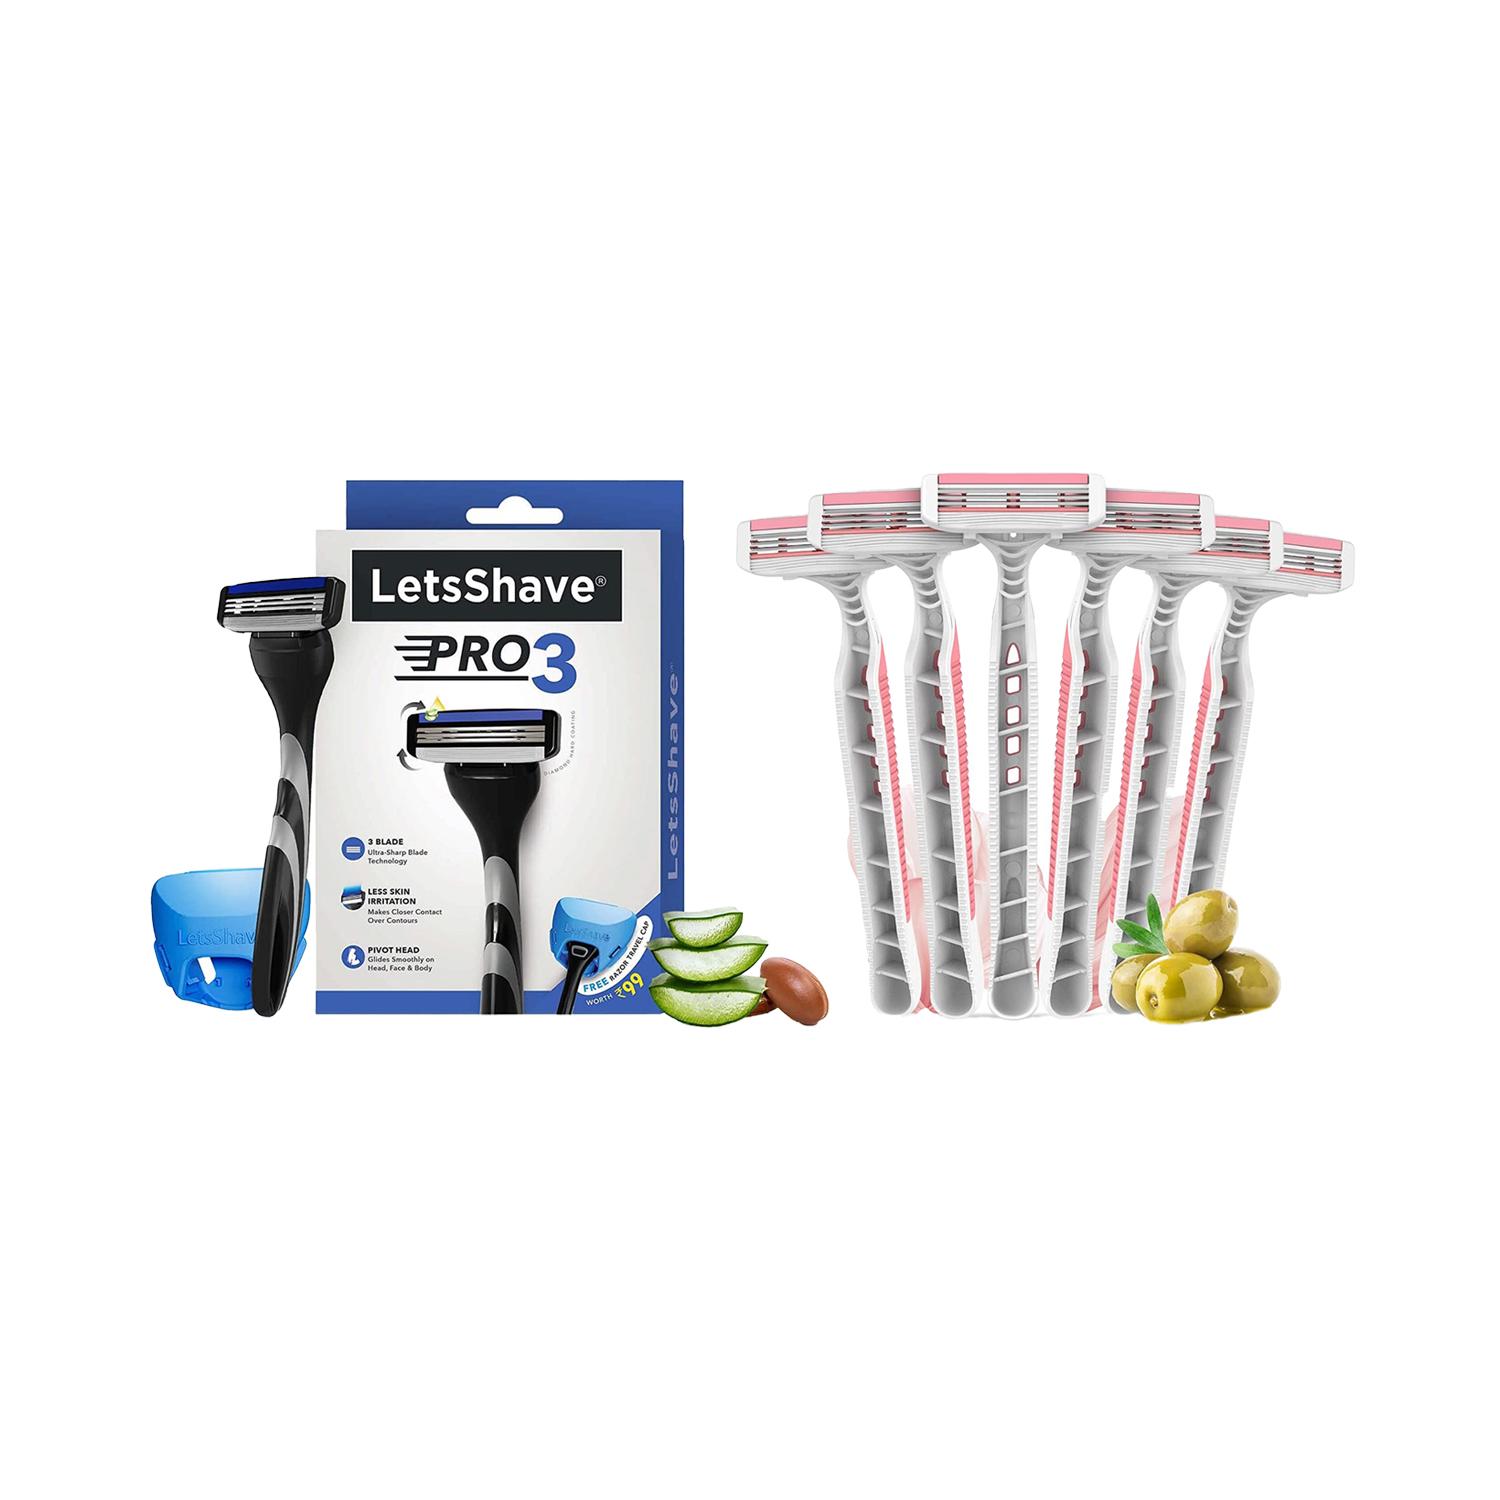 LetsShave | Letsshave Pro 3 Shaving Razor For Men & Evior 3 Plus Disposable Razor For Women (Pack Of 6) Combo